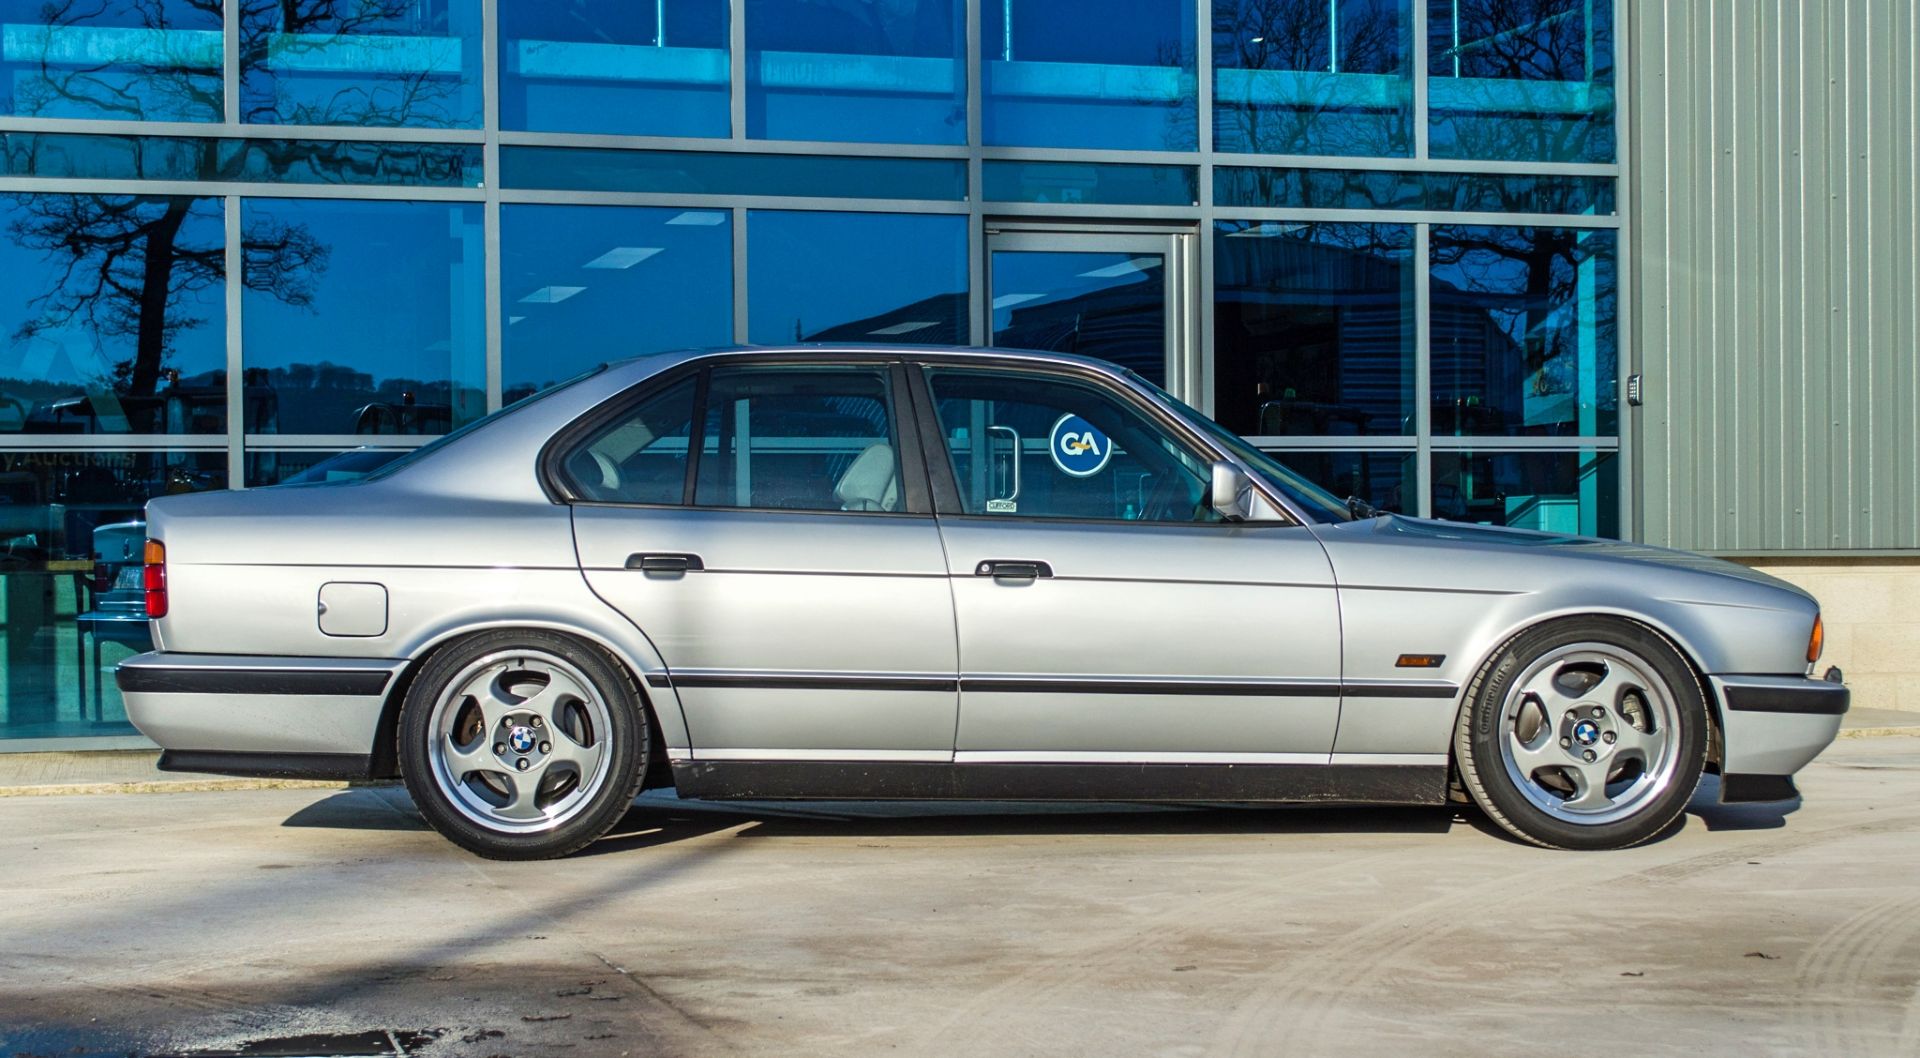 1991 BMW M5 E34 3.6 litre 4 door saloon - Image 14 of 59